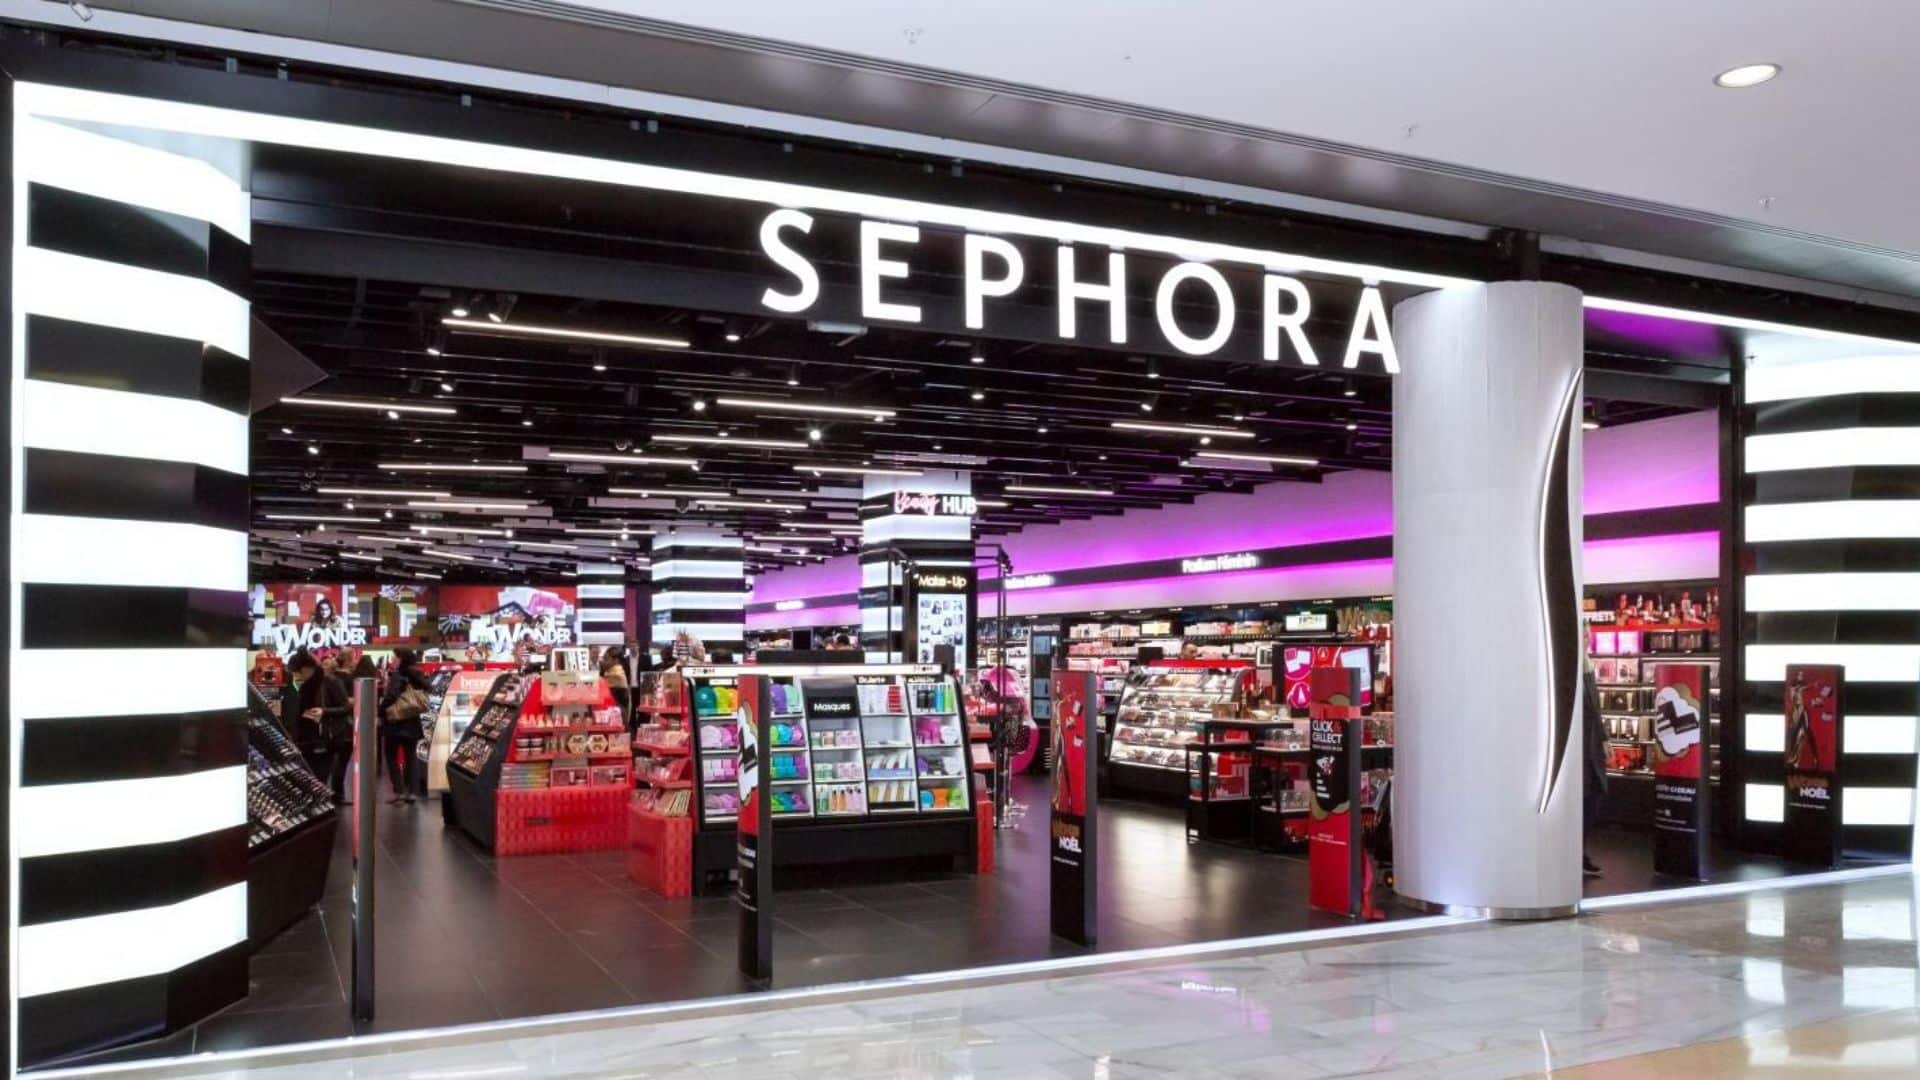 Sephora : une astuce secrète pour avoir des produits gratuits sur le site internet dévoilée, on vous explique tout sur cette page secrète ! 